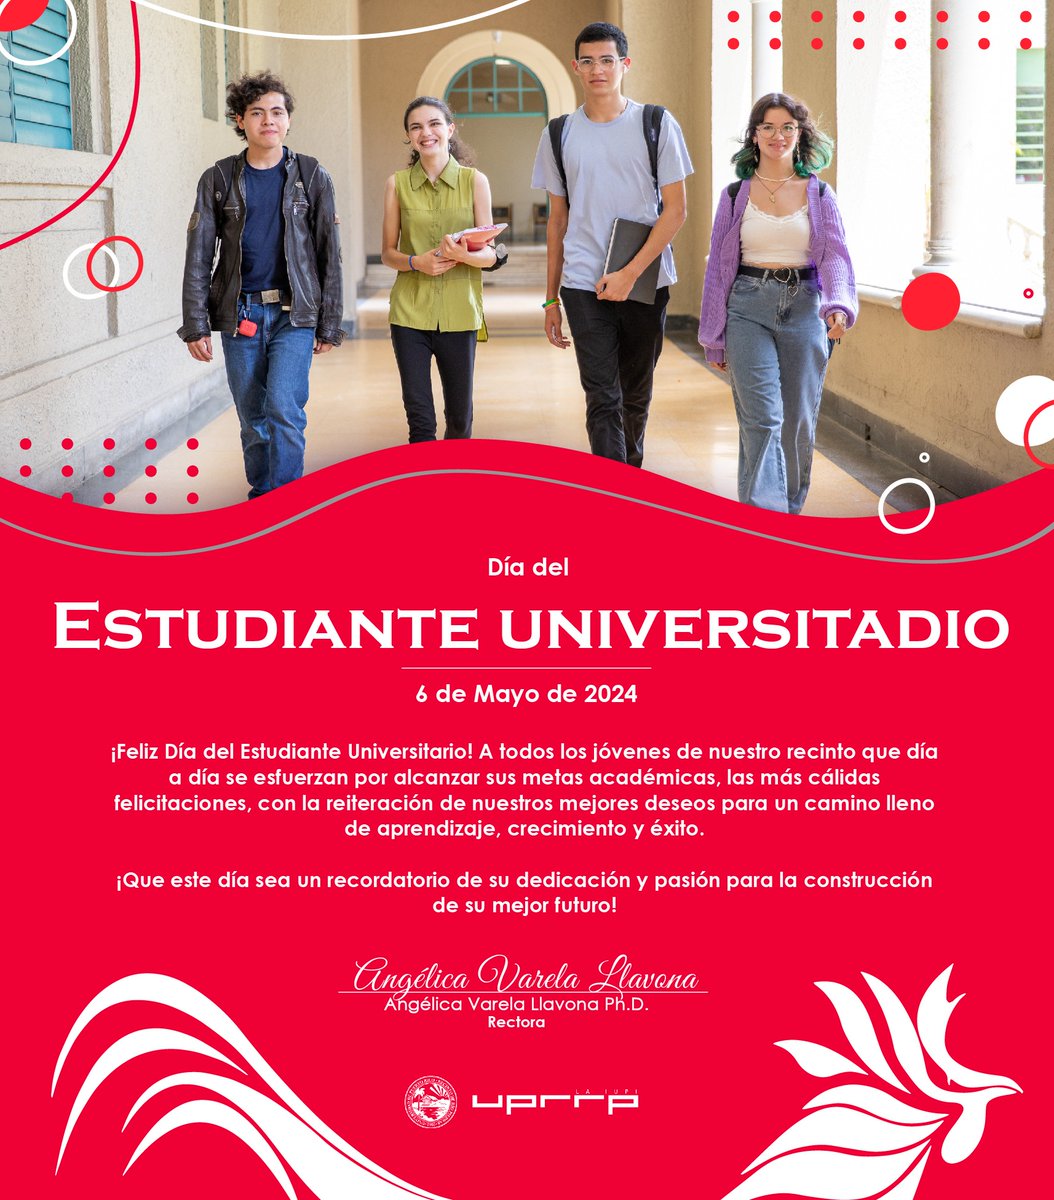 🎉Felicitamos a nuestros #gallitos y #jerezanas en el Día del Estudiante Universitario.🐔